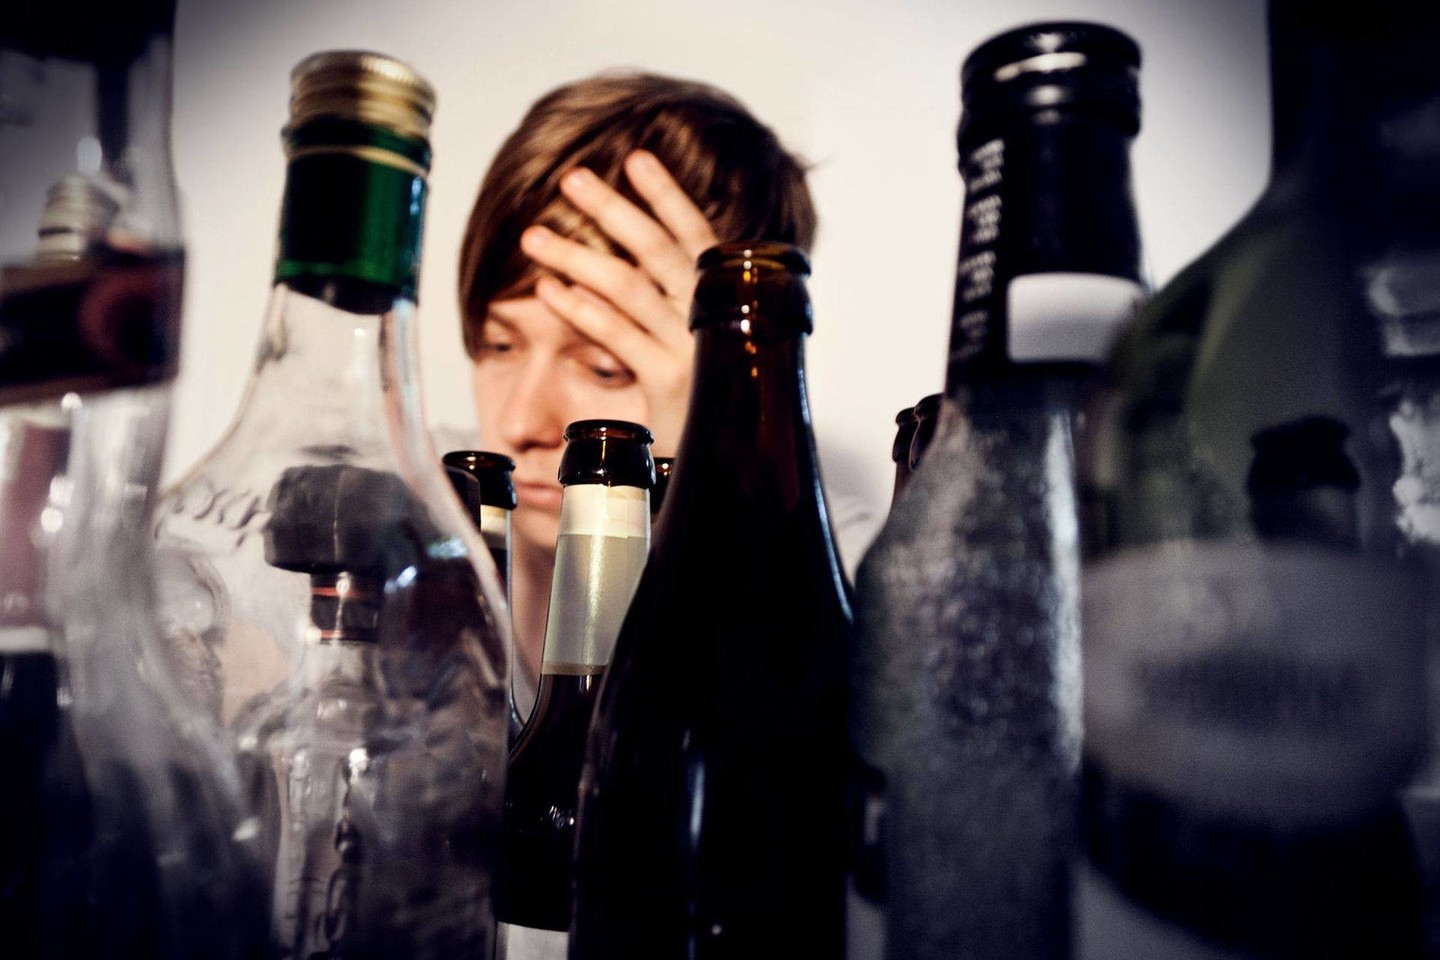 Pasak psichologės psichoterapeutės R.Tomkevičienės, savo elgesio pasekmes labai svarbu patirti ne tik nuo alkoholio priklausomiems žmonėms, bet ir jų artimiesiems, nes kitaip neįmanoma išmokti pamokų.<br>123rf nuotr.